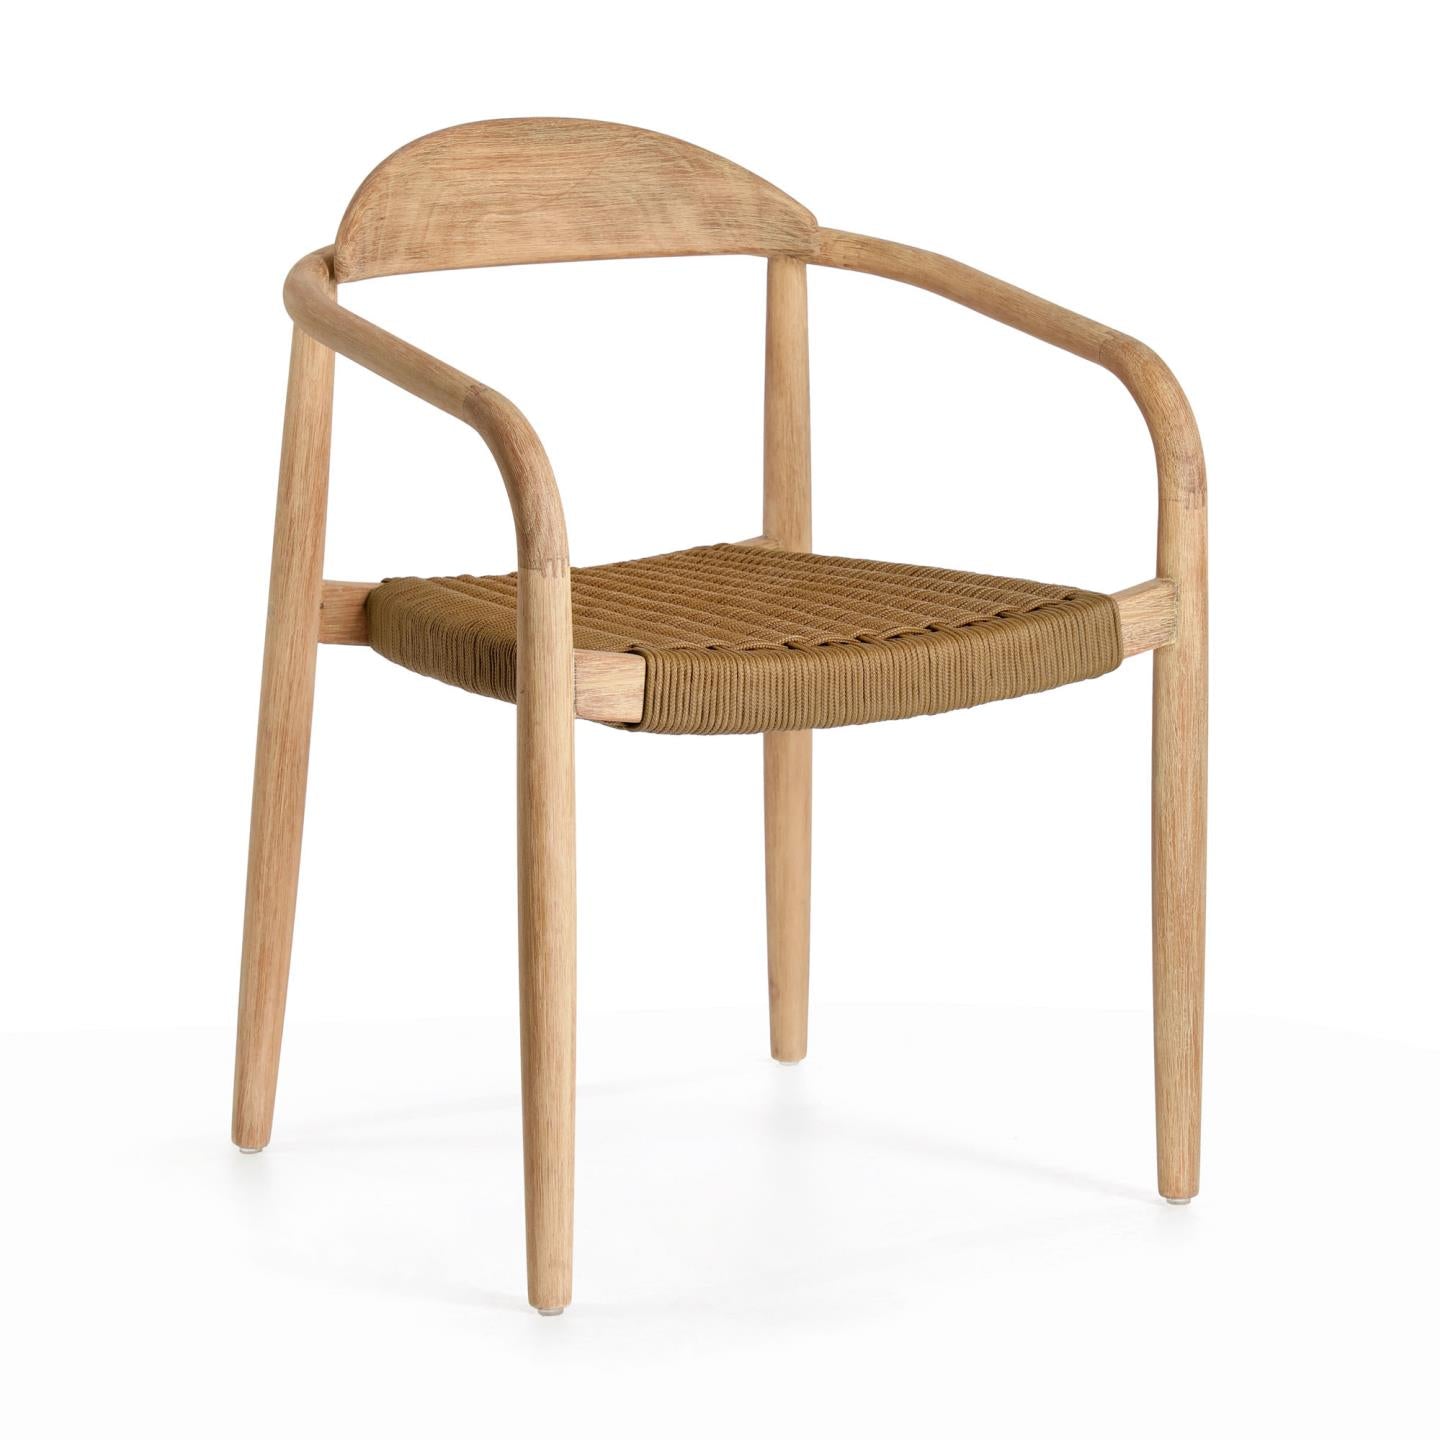 Nina egymásba rakható szék tömör akácfából, bézs színű kötélből készült ülőfelülettel